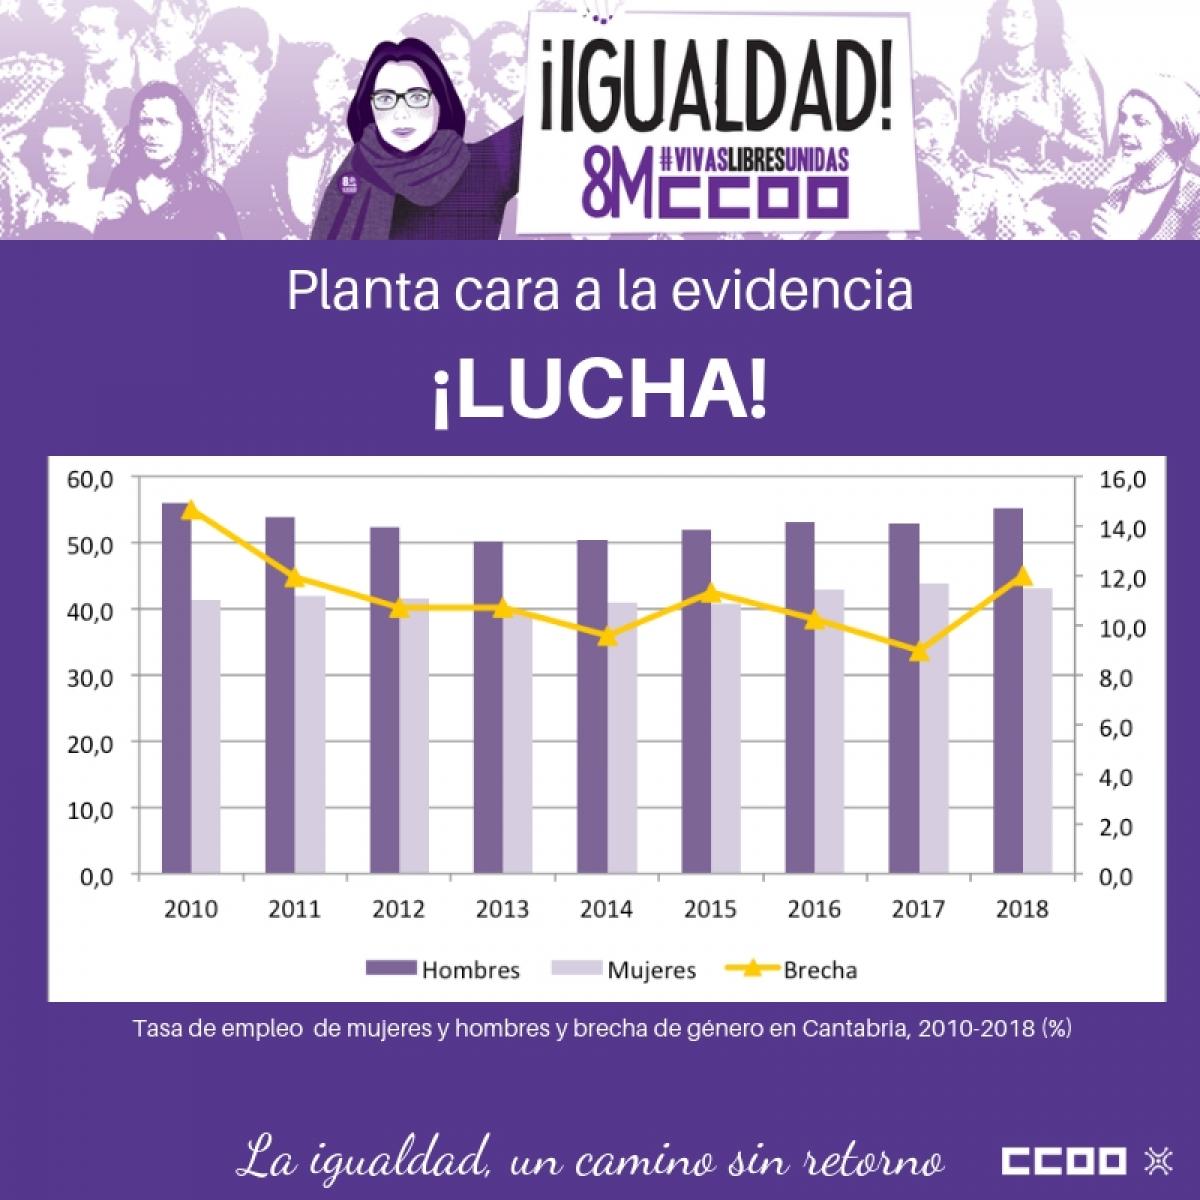 Tasa de empleo de mujeres y hombres y brecha de gnero en Cantabria 2010-2018